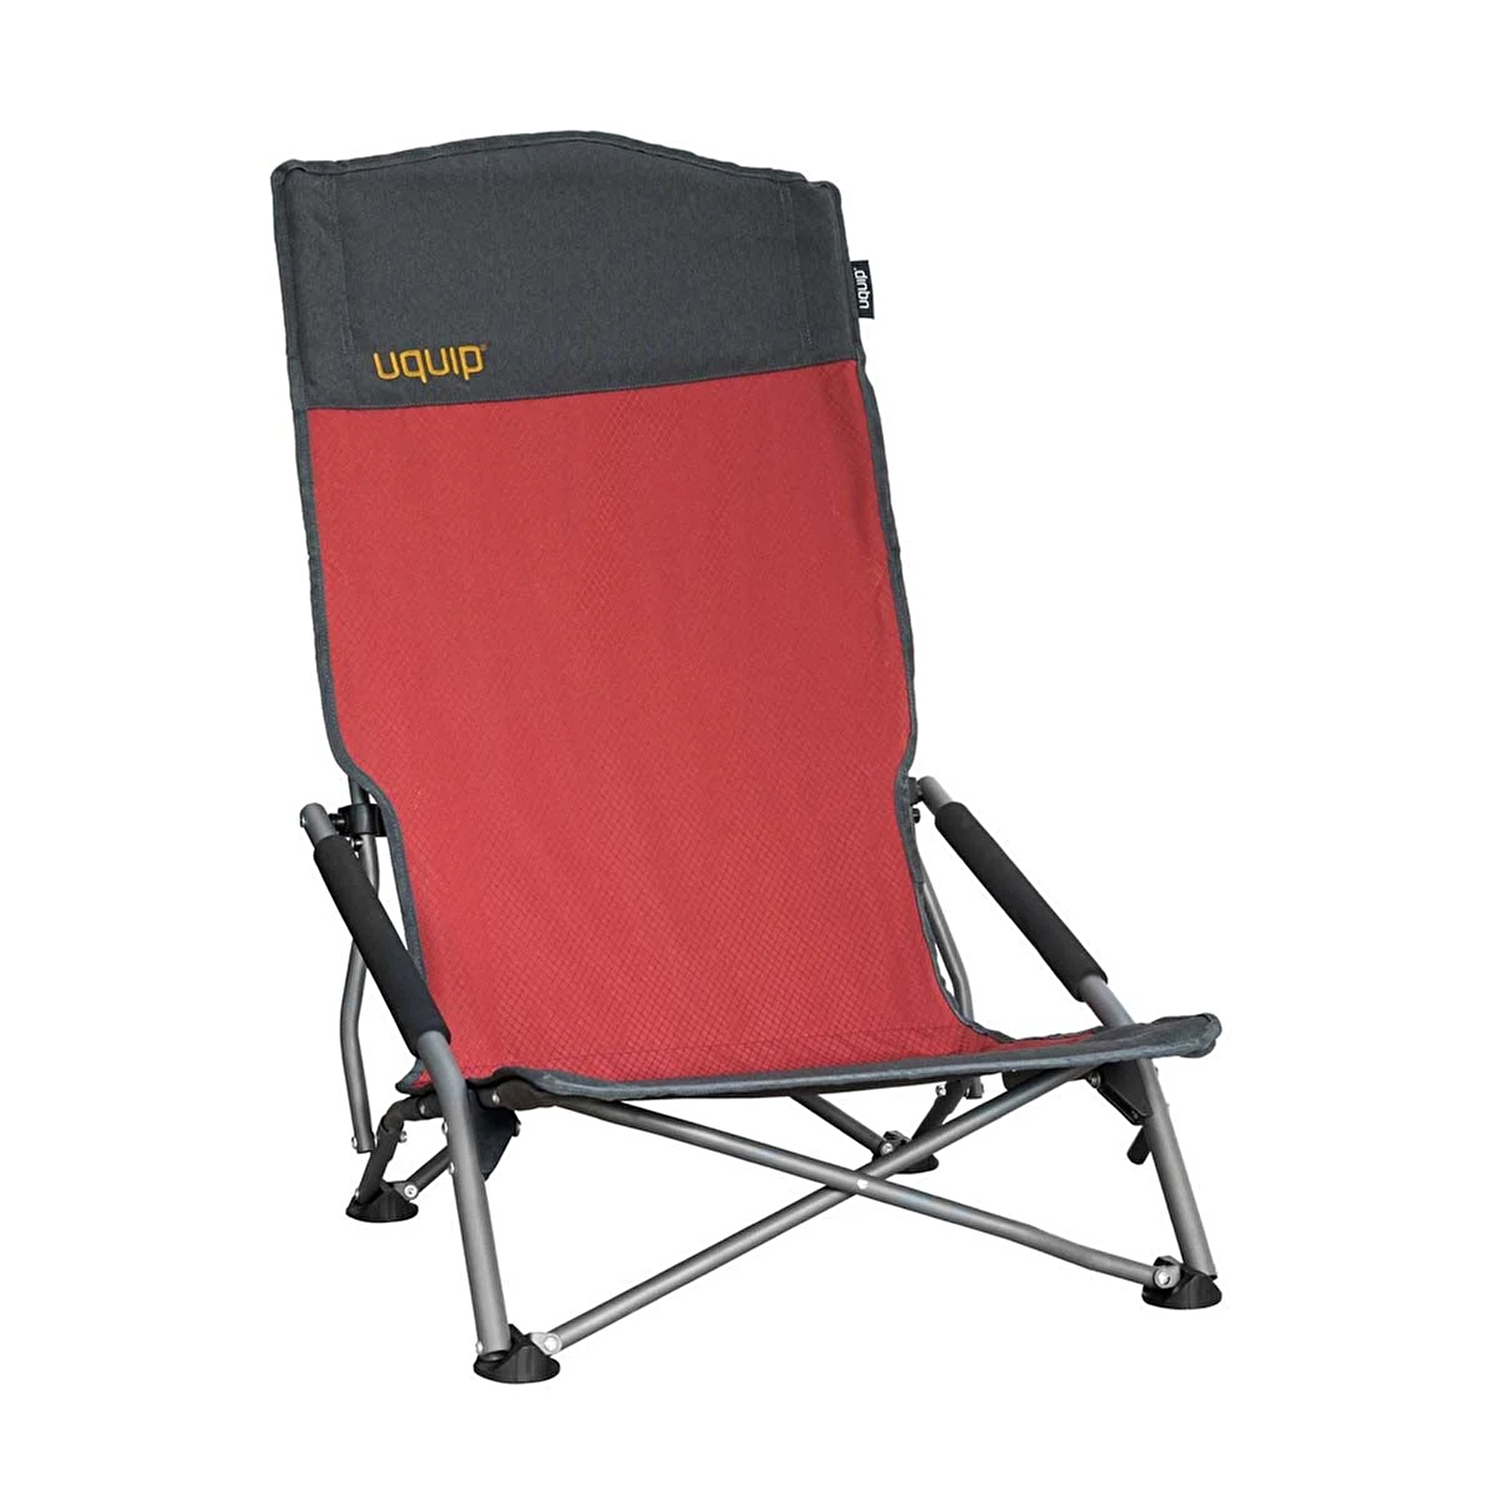 Uquip Sandy XL Yüksek Konforlu ve Takviyeli Katlanır Plaj ve Kamp Sandalyesi